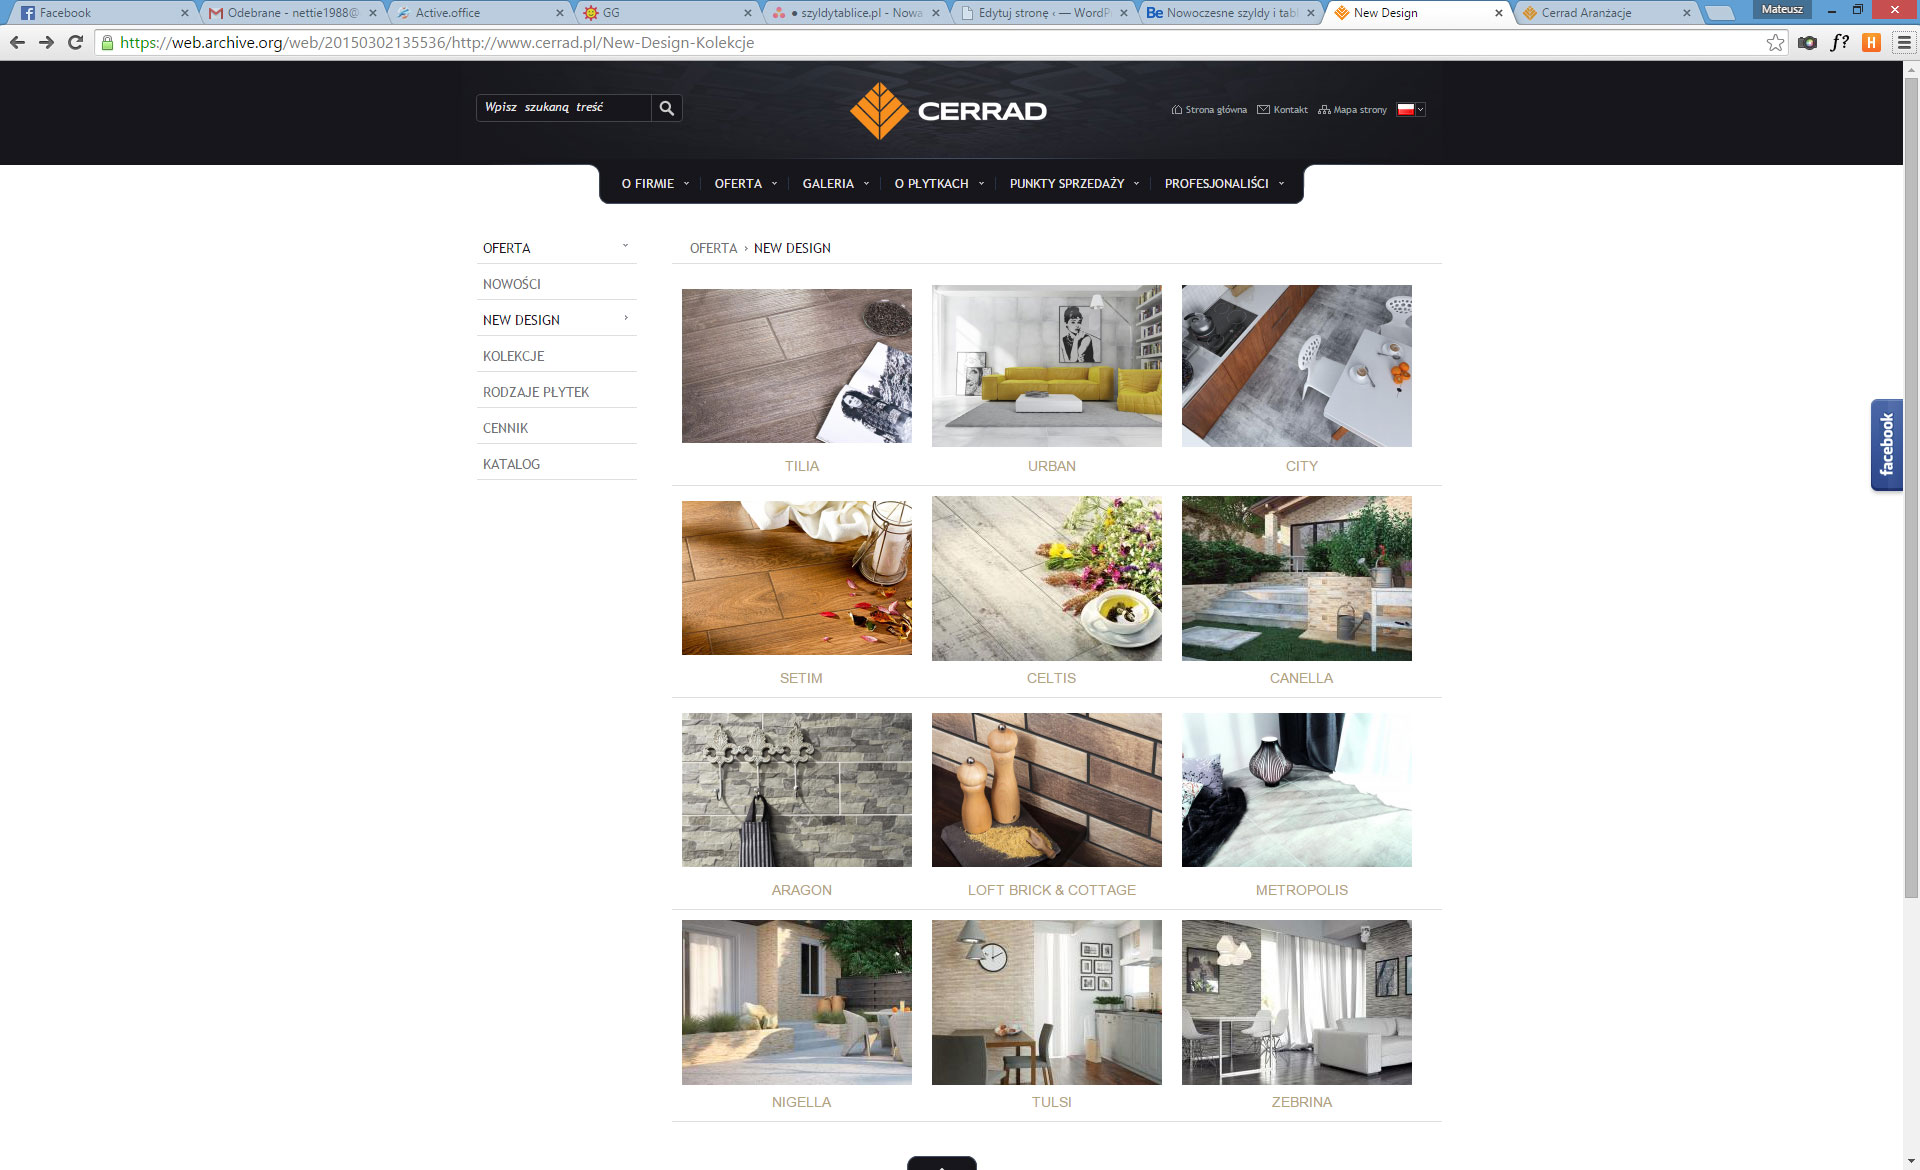 Strona firmowa Cerrad kolekcja New Design